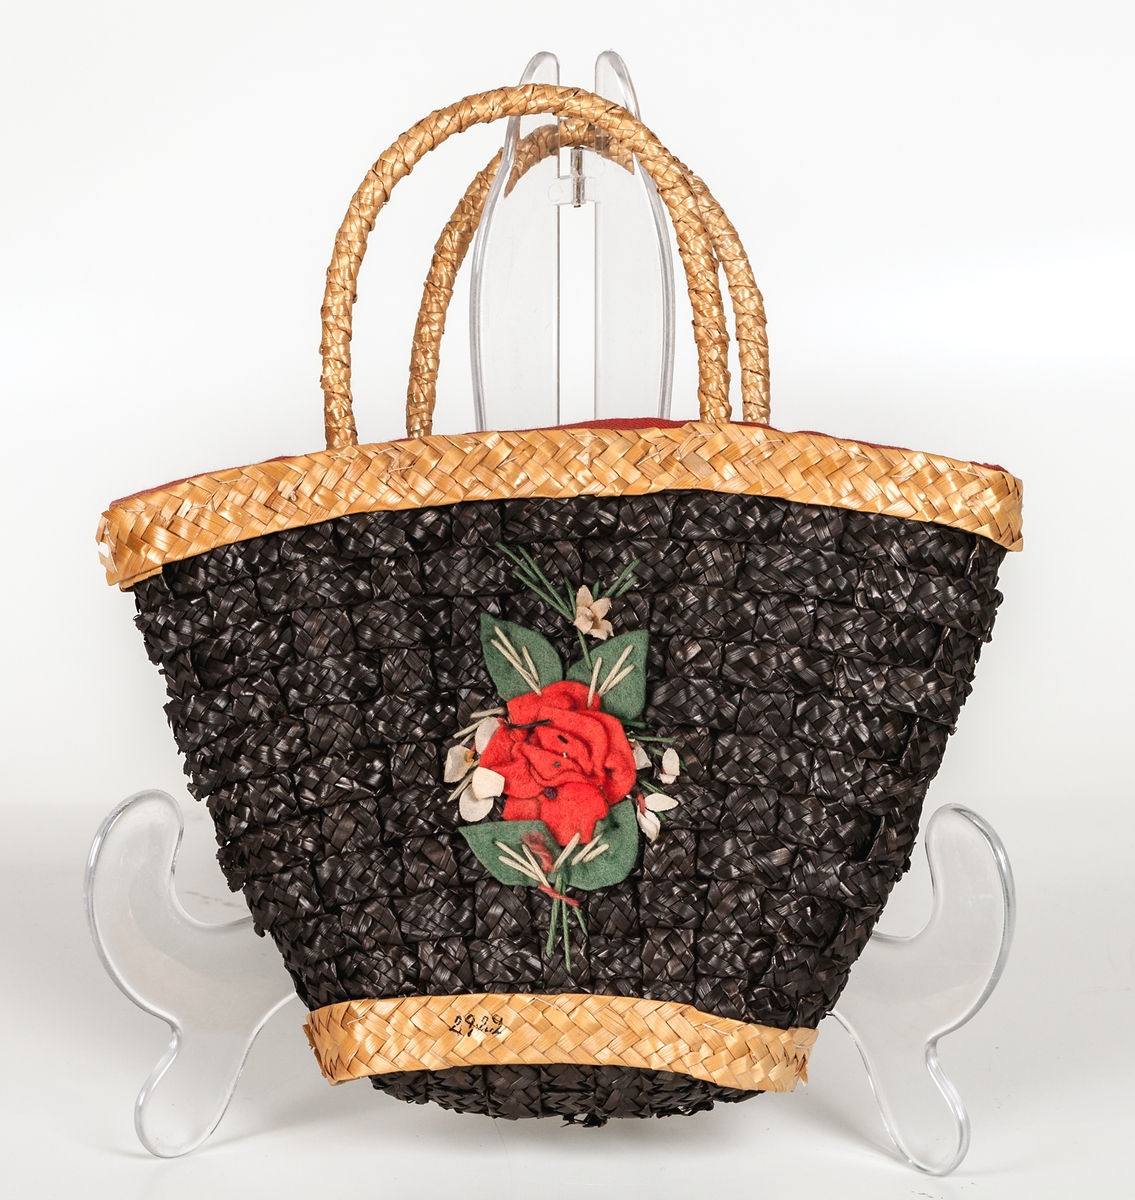 Handväska i form av en flätad korg, rött tygfoder, påsydda blommor av ylle.